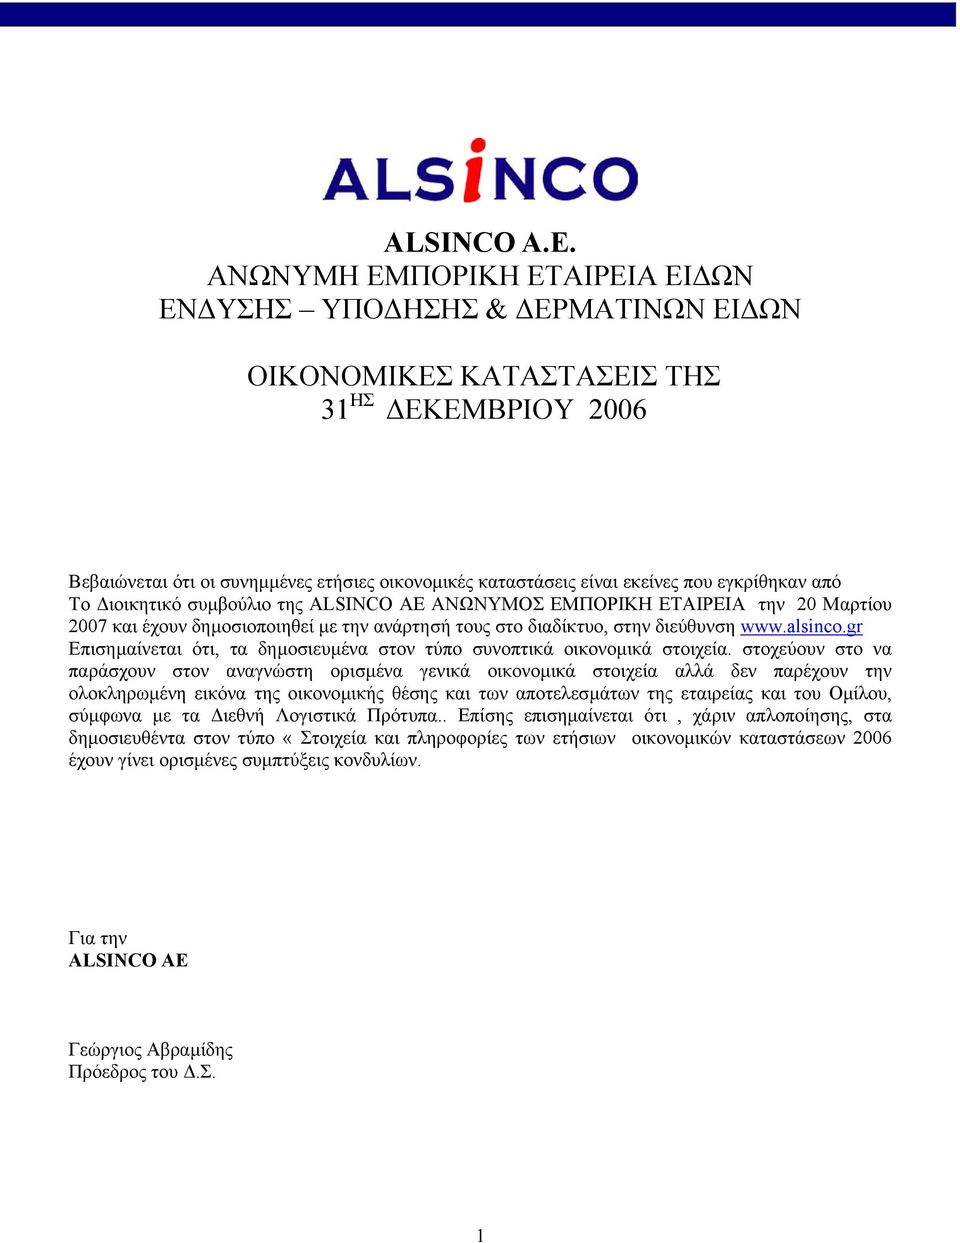 από Το ιοικητικό συµβούλιο της ALSINCO ΑΕ ΑΝΩΝΥΜΟΣ ΕΜΠΟΡΙΚΗ την 20 Μαρτίου 2007 και έχουν δηµοσιοποιηθεί µε την ανάρτησή τους στο διαδίκτυο, στην διεύθυνση www.alsinco.